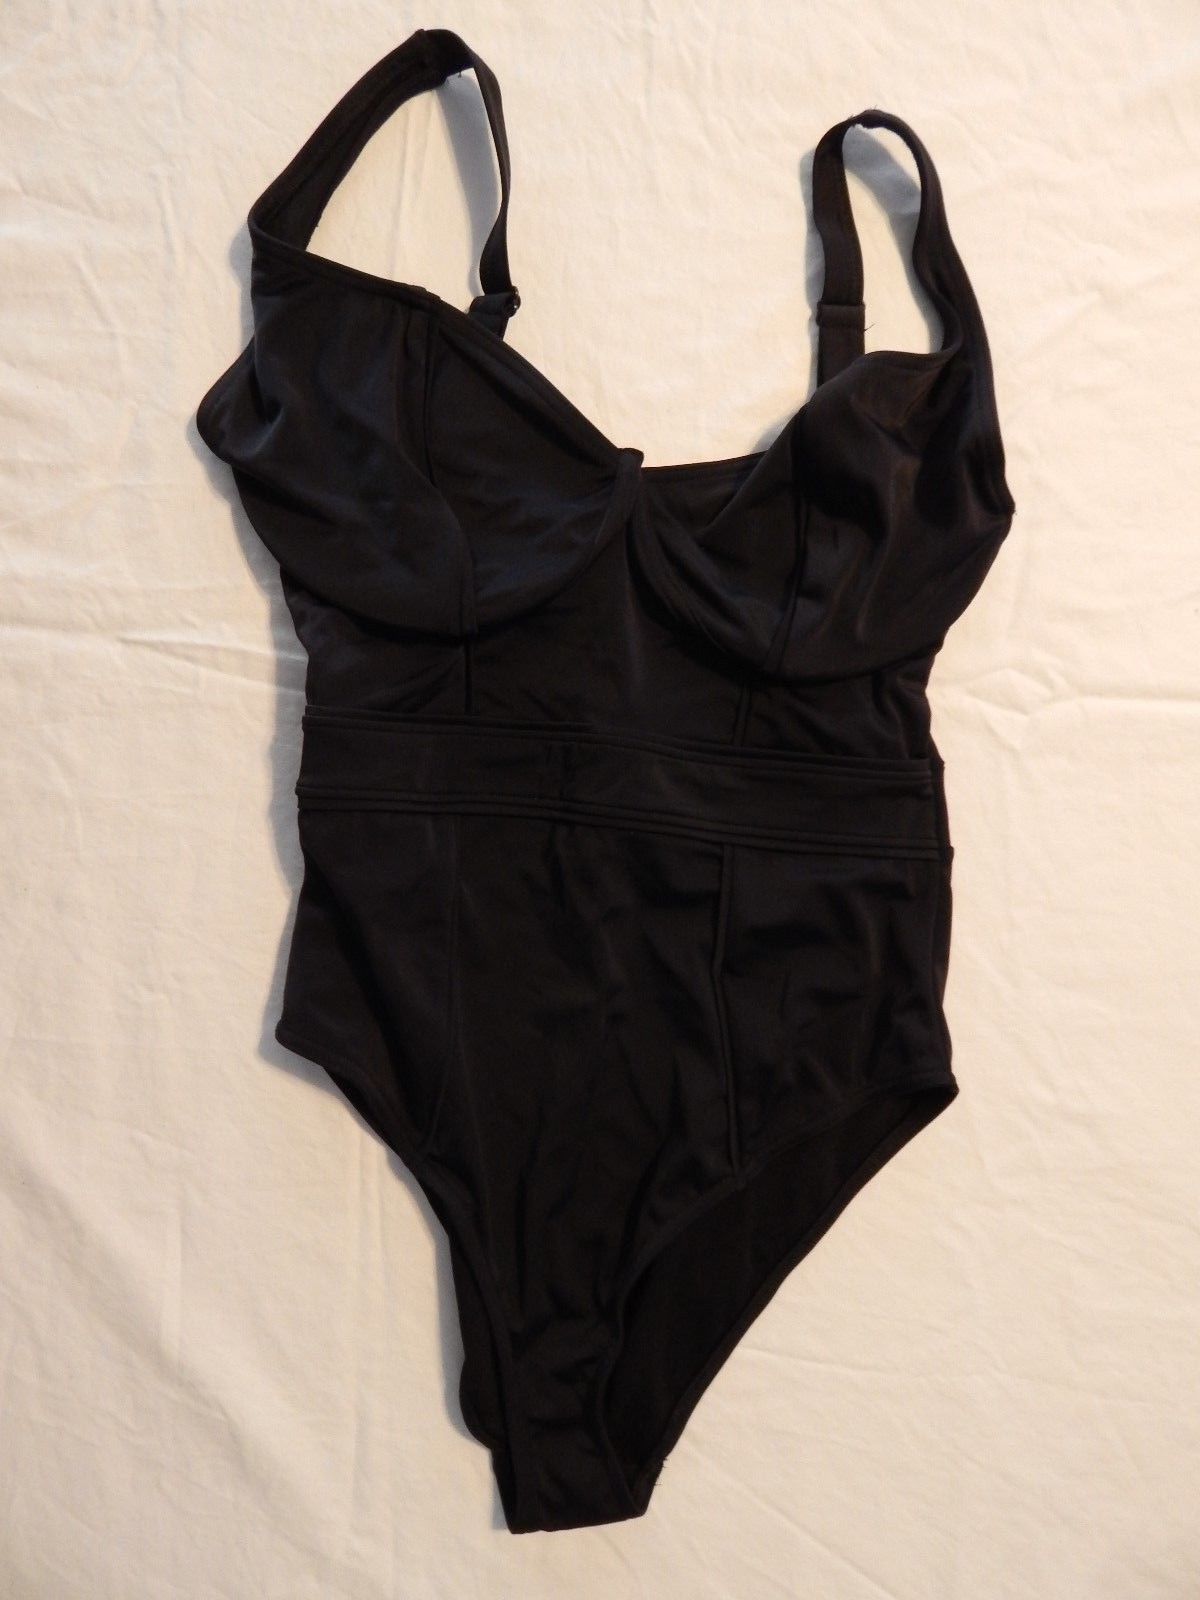 NEW Asos One Piece Black Swim Suit Size 32F UK Eu 70G - US 32G - Swimwear